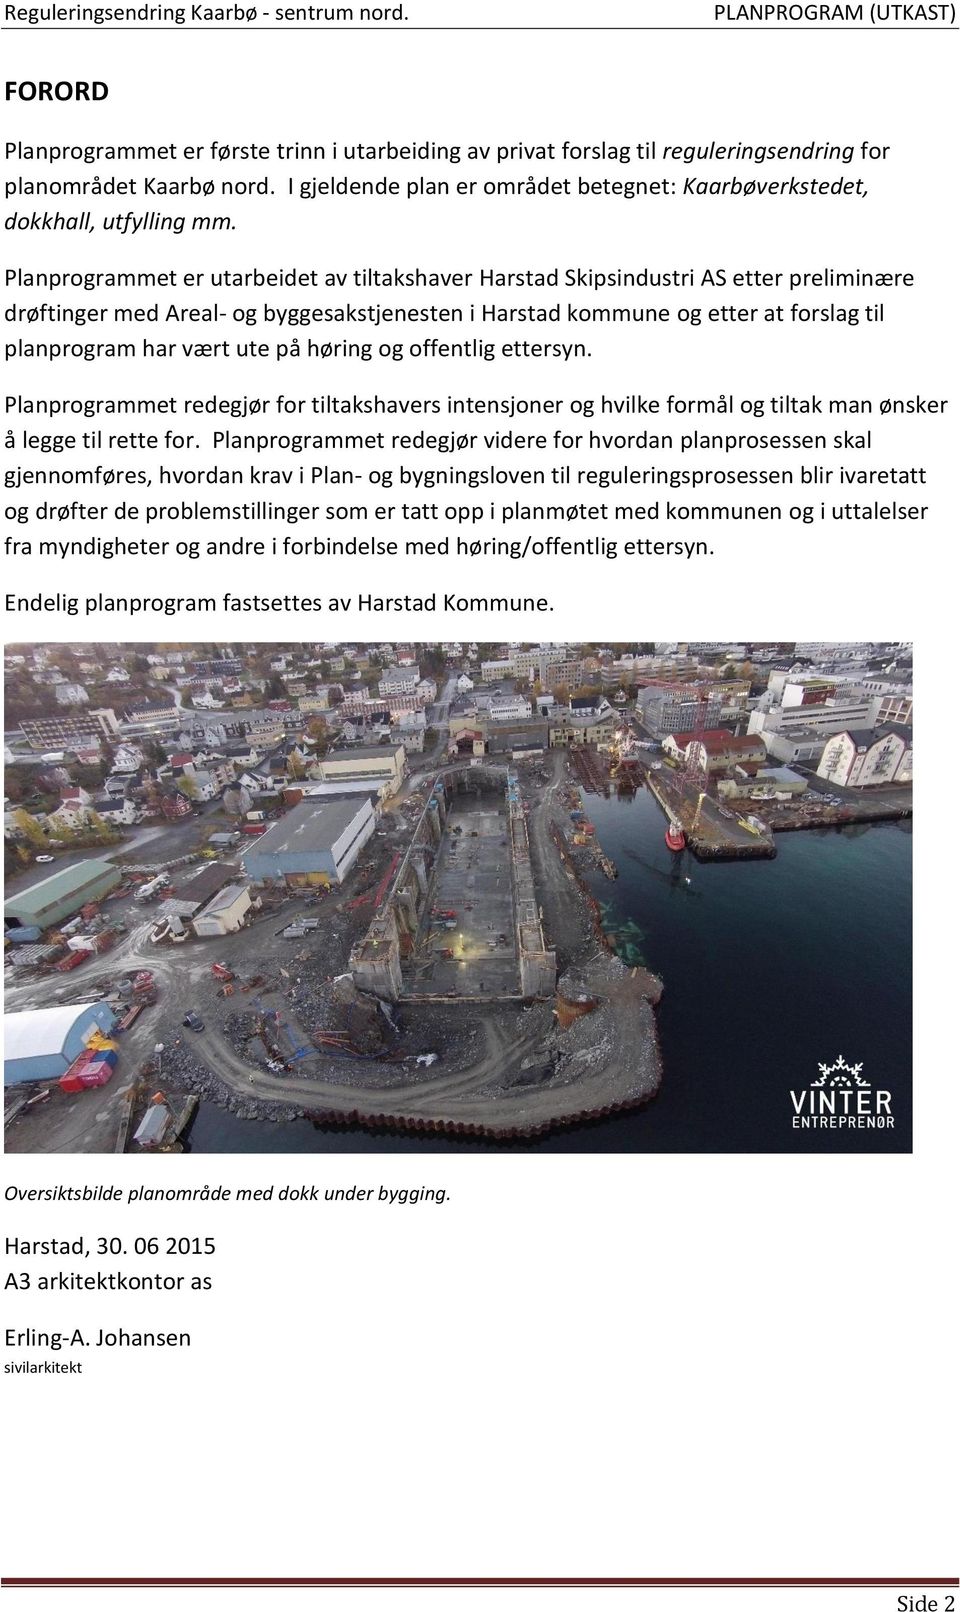 Planprogrammet er utarbeidet av tiltakshaver Harstad Skipsindustri AS etter preliminære drøftinger med Areal- og byggesakstjenesten i Harstad kommune og etter at forslag til planprogram har vært ute